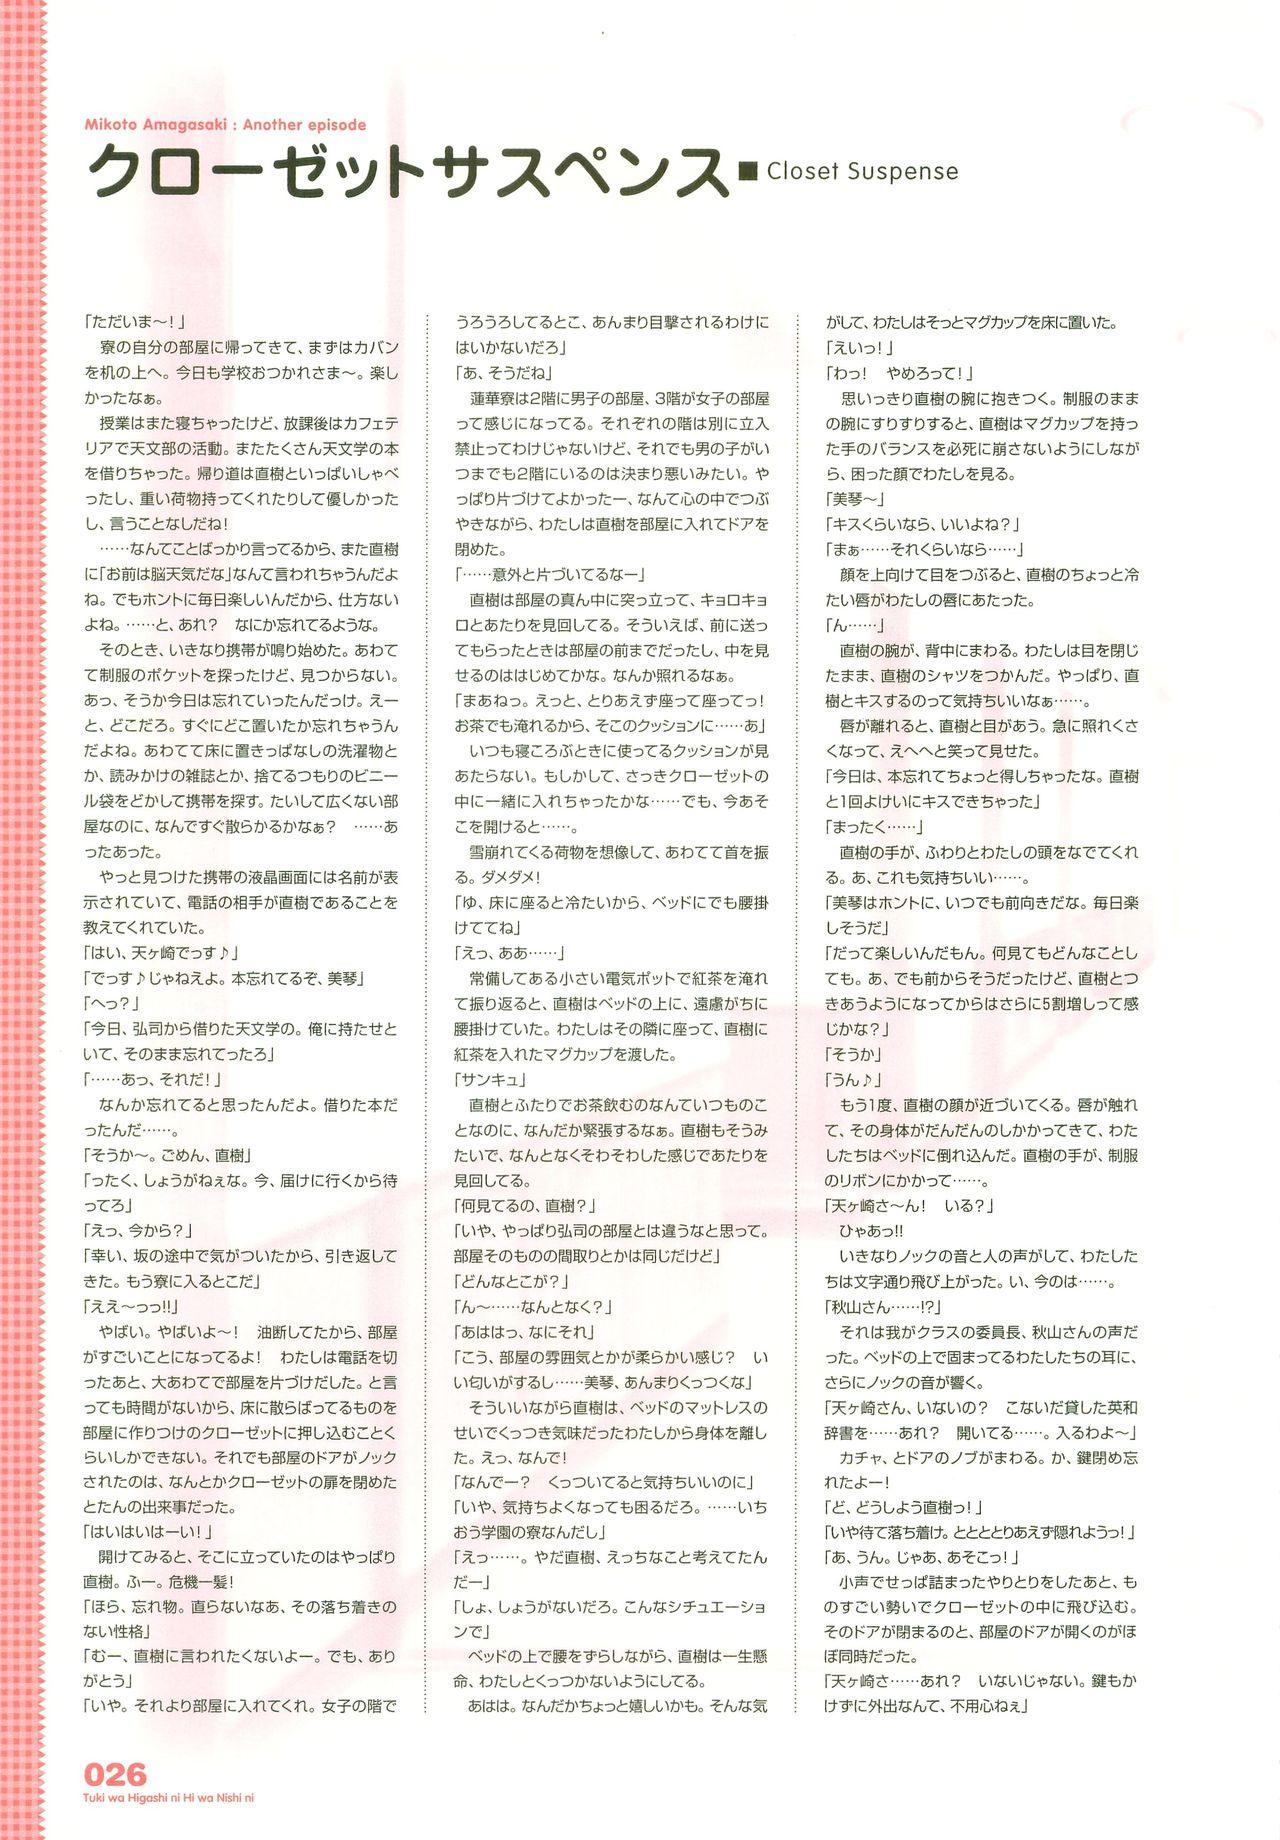 Tsuki wa Higashi ni Hi wa Nishi ni - Operation Sanctuary - Visual Fan Book Shokai Ban 36